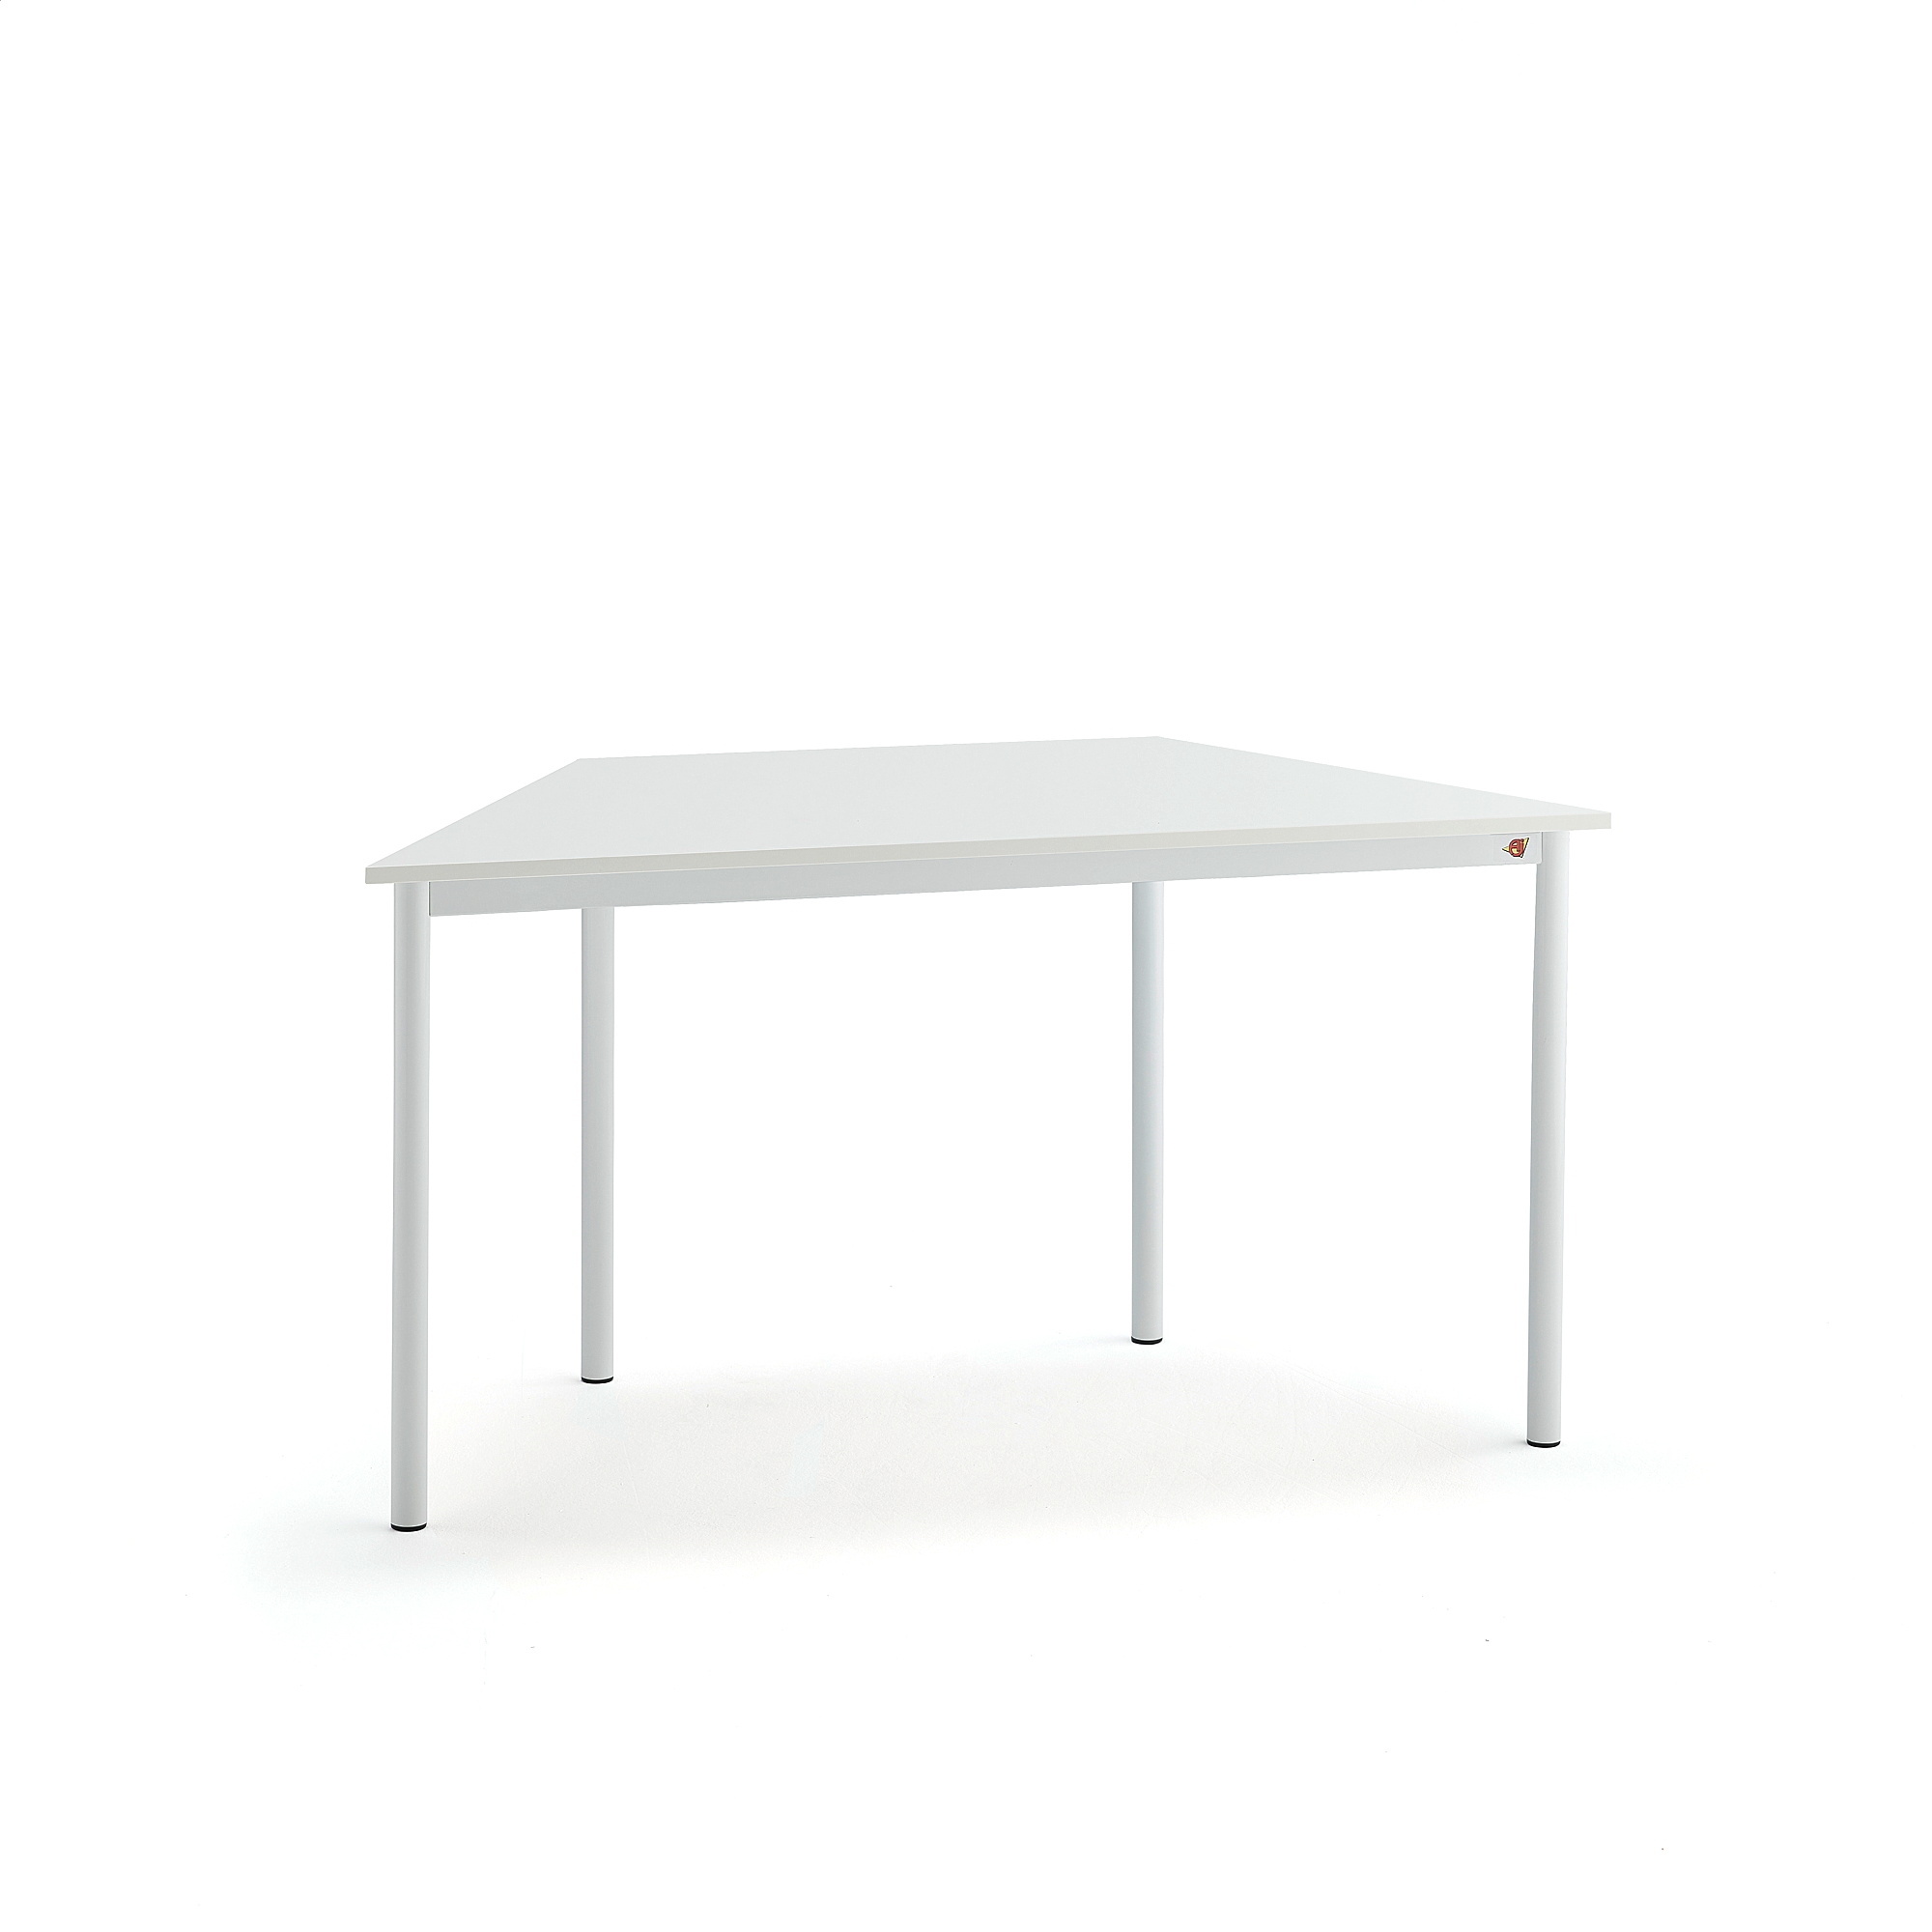 Stůl SONITUS TRAPETS, 1200x600x720 mm, bílé nohy, HPL deska tlumící hluk, bílá